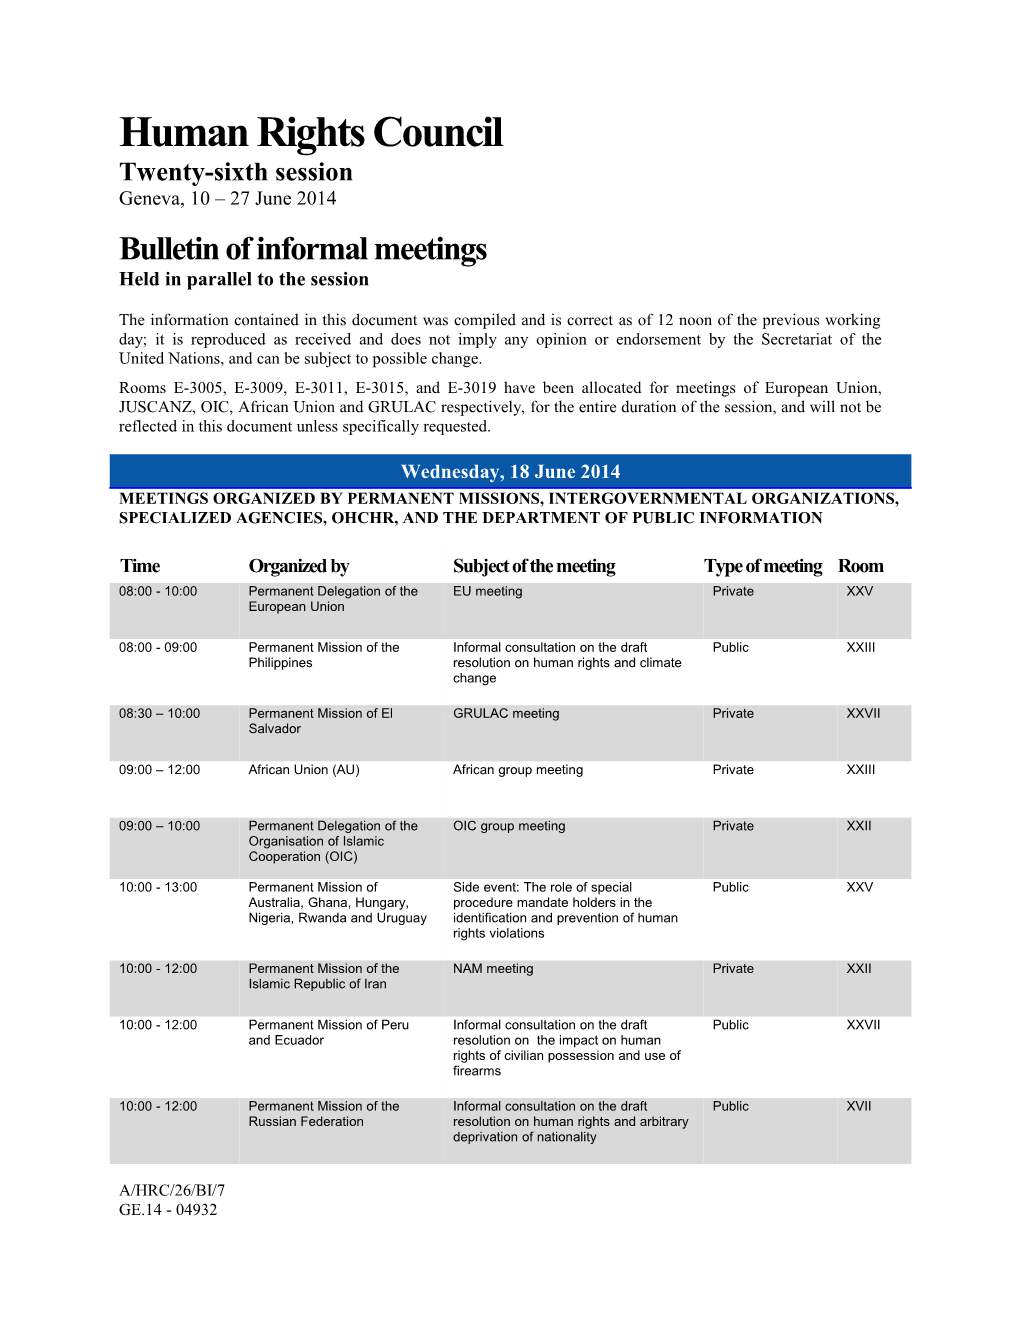 Bulletin of Informal Meetings, 18 June 2014